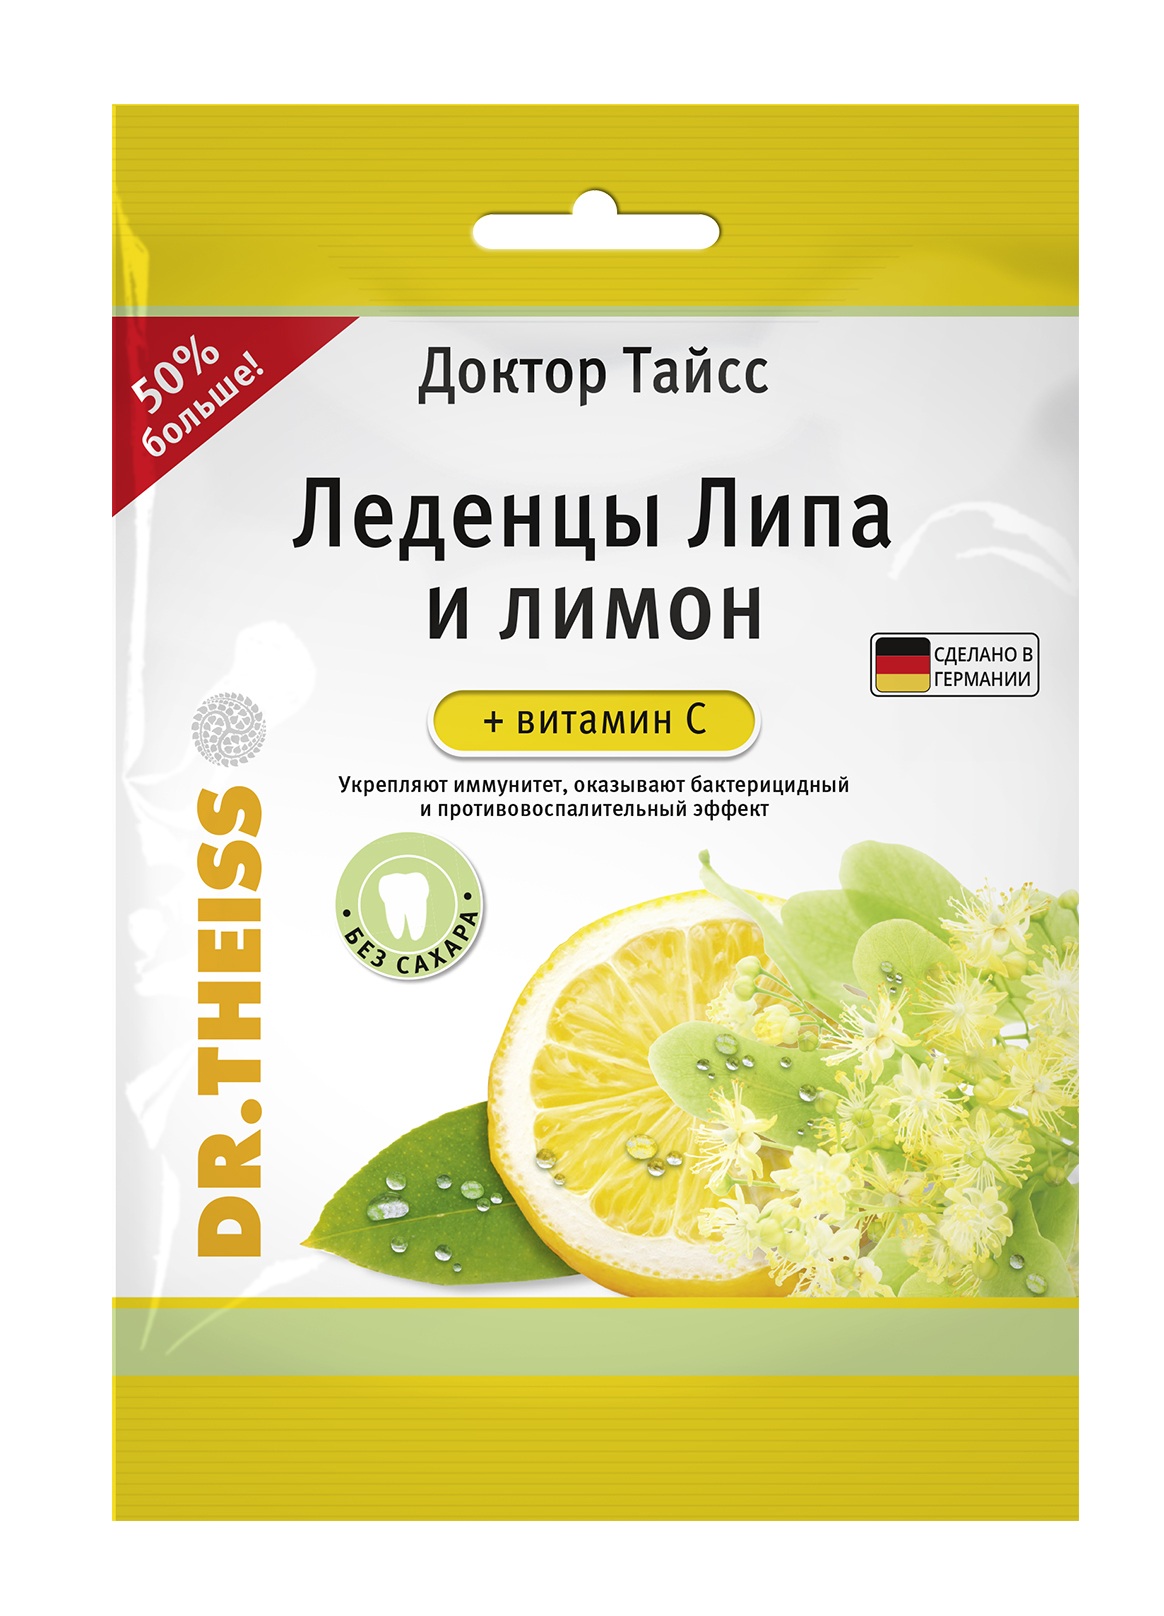 Доктор Тайсс леденцы липа и лимон+витамин С 75г кармолис мед и витамин с детские леденцы 75г